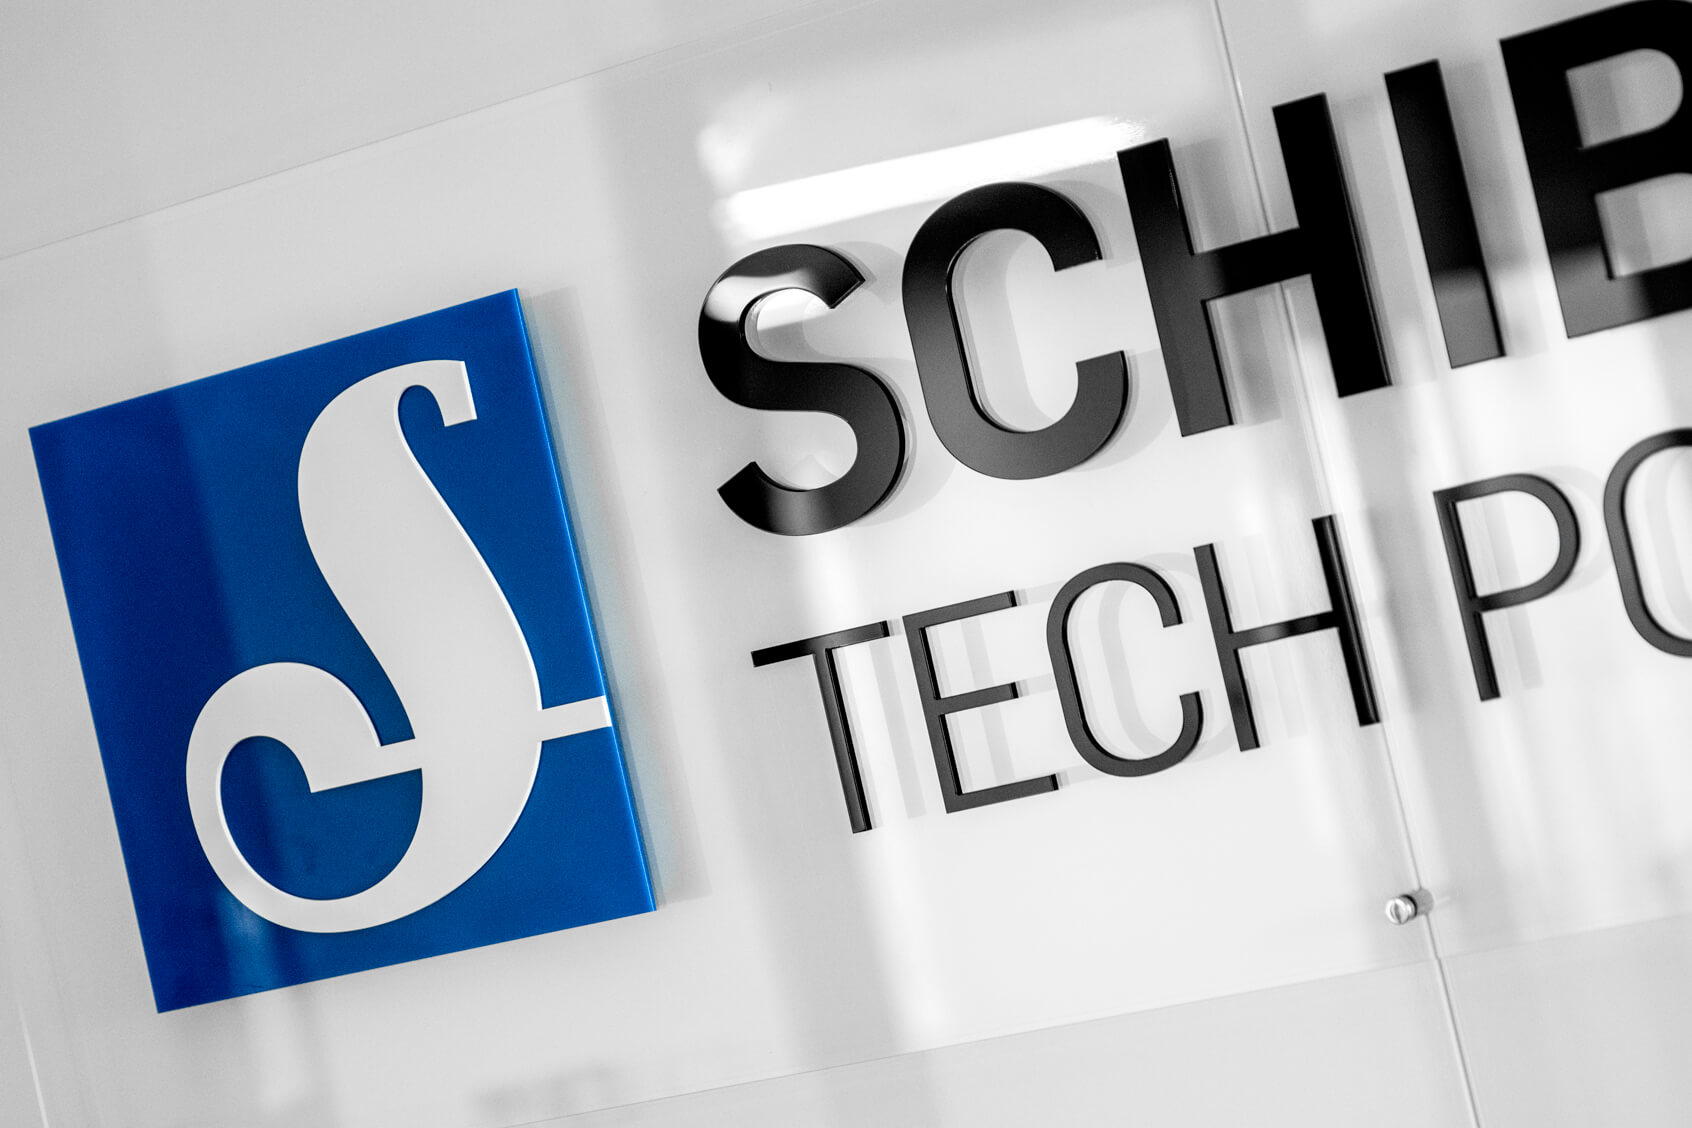 Schibsted Tech Polonia - Schibsted Tech Polonia - logotipo y letras en 3D sobre fondo de plexiglás montados en separadores en la zona de recepción